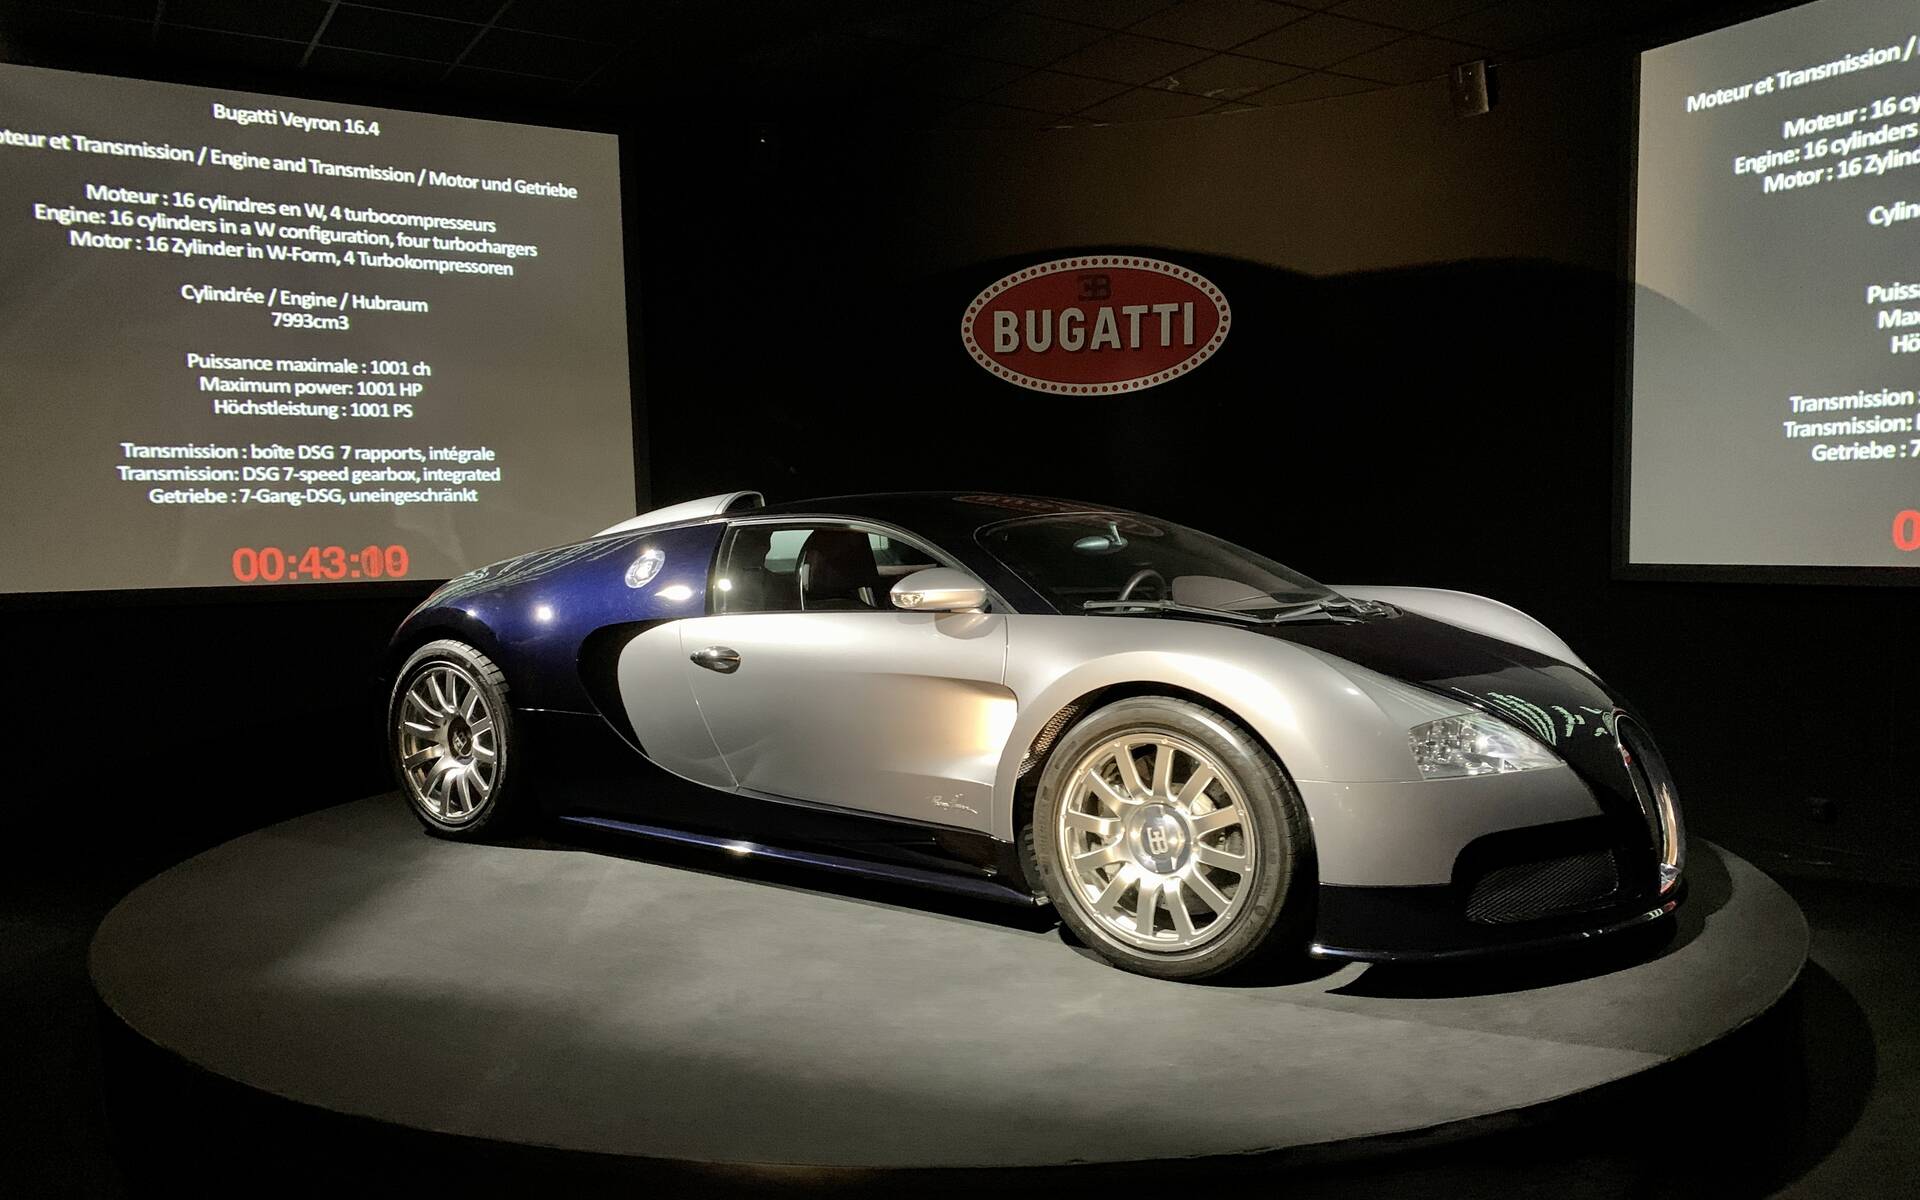 En photos : une centaine de Bugatti réunies dans un même musée 503076-en-photos-des-dizaines-de-bugatti-reunies-dans-un-meme-musee